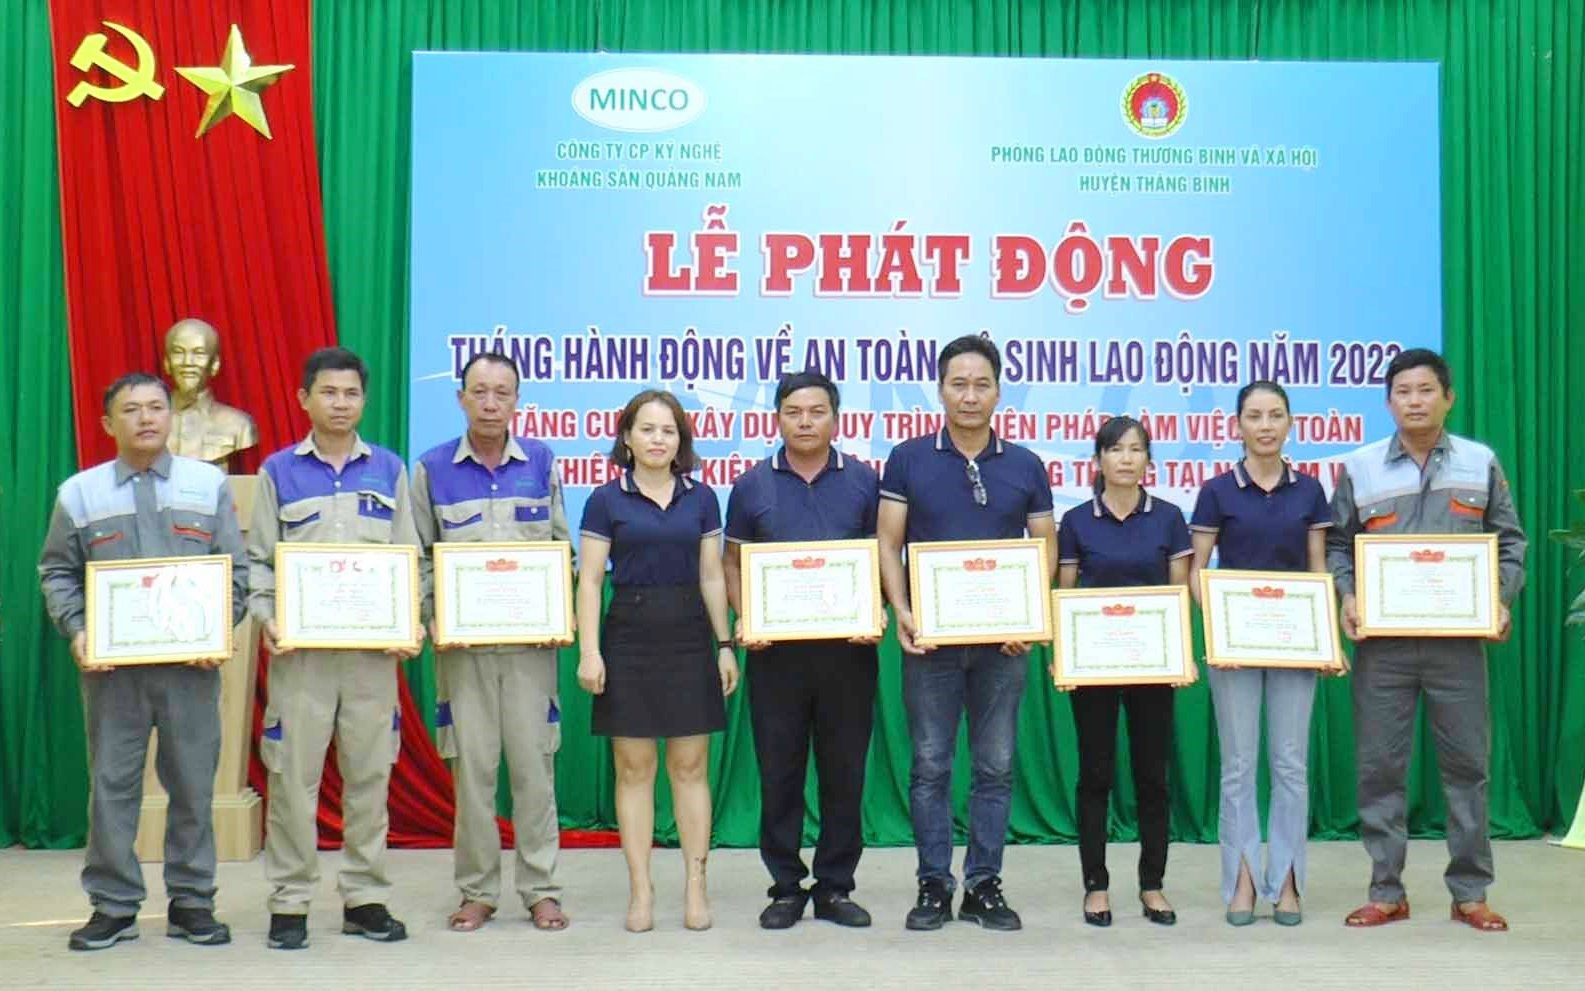 Đại diện Công ty CP Khoáng sản Quảng Nam khen thưởng cho các nhân có thành tích tốt trong thực hiện vệ sinh, an toàn lao động năm 2022